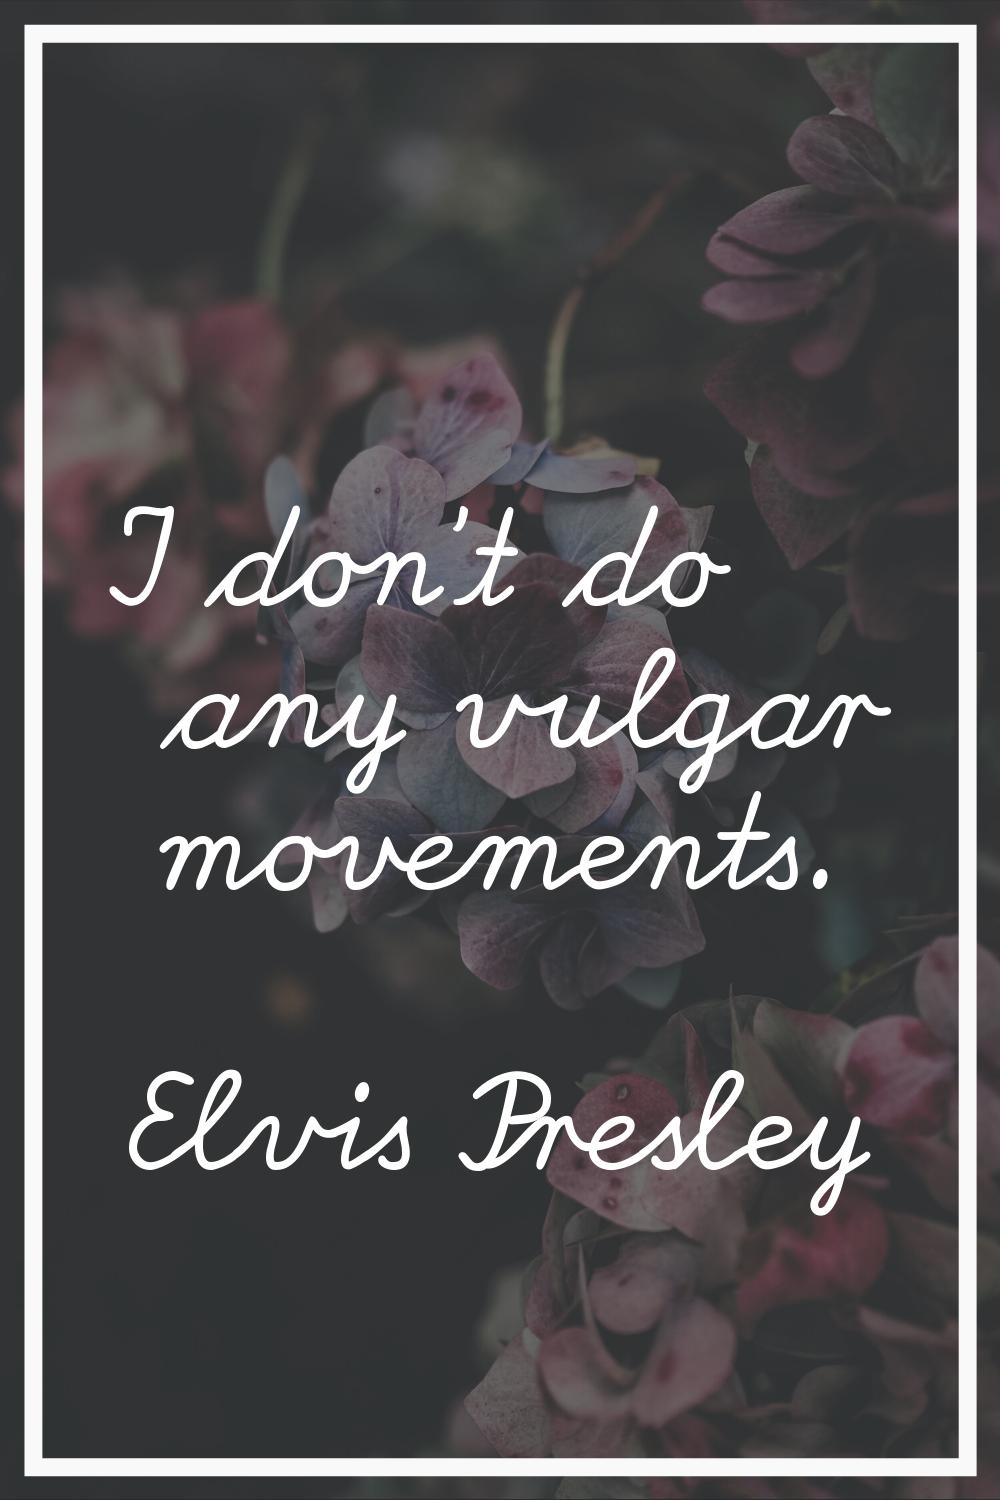 I don't do any vulgar movements.